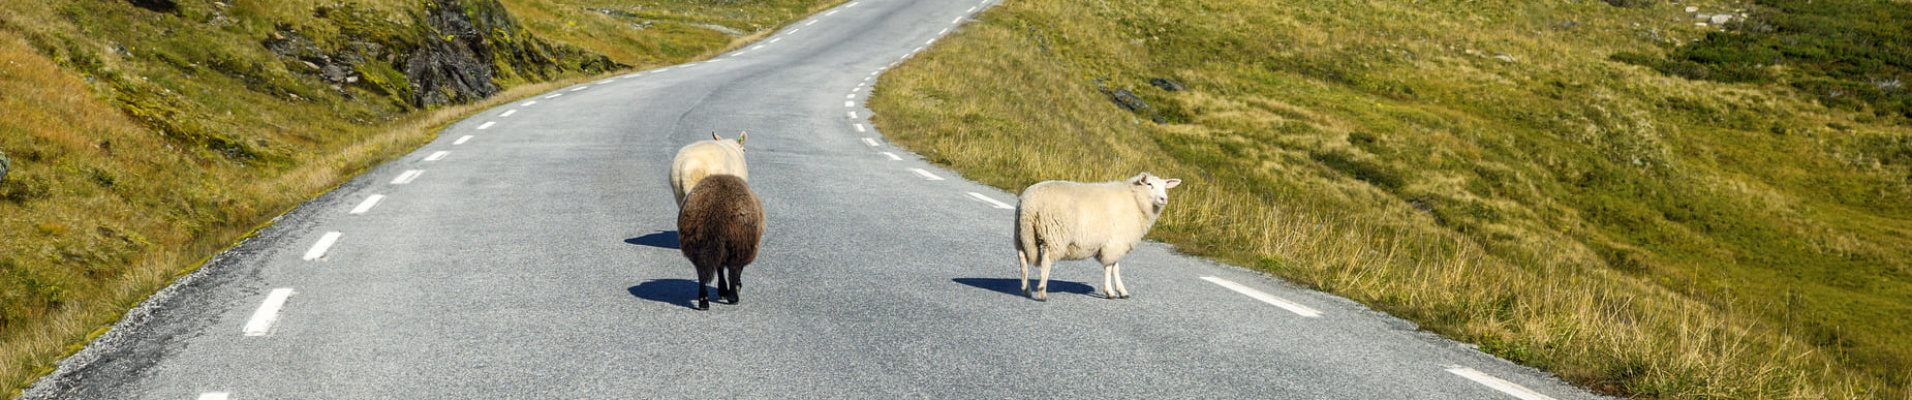 Moutons dans des paysages norvégiens